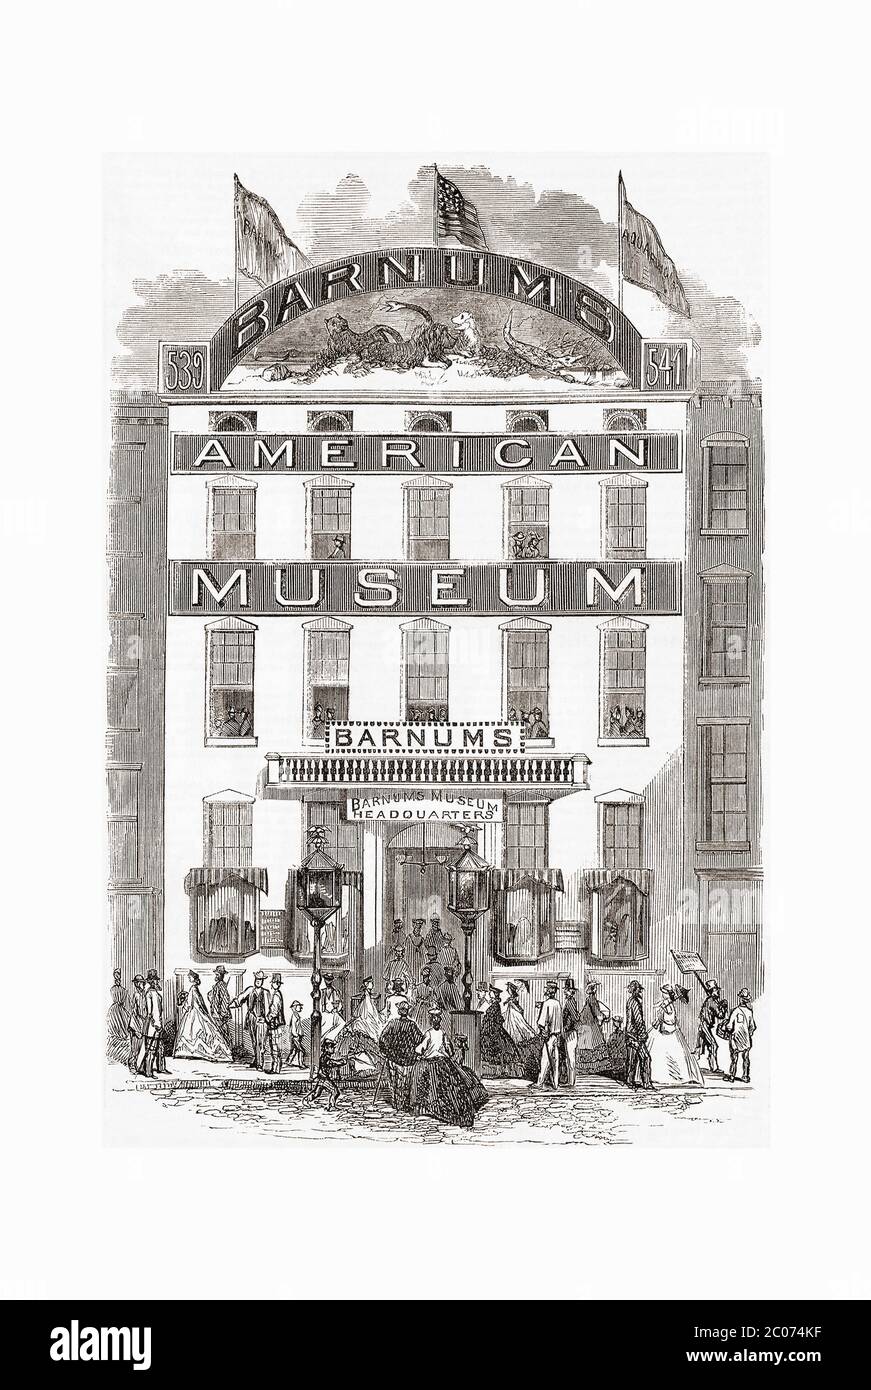 Il nuovo American Museum di Barnum a Broadway, New York, USA. Dopo un'incisione sul quotidiano illustrato di Frank Leslie, 30 settembre 1865. P. T. Barnum - ha di Barnum & Bailey fama circus - ha aperto il suo originale Museo americano nel 1841. Bruciò nel 1865. Più tardi nello stesso anno aprì il nuovo Museo Americano, qui raffigurato. Nel 1868 bruciò anche. Foto Stock